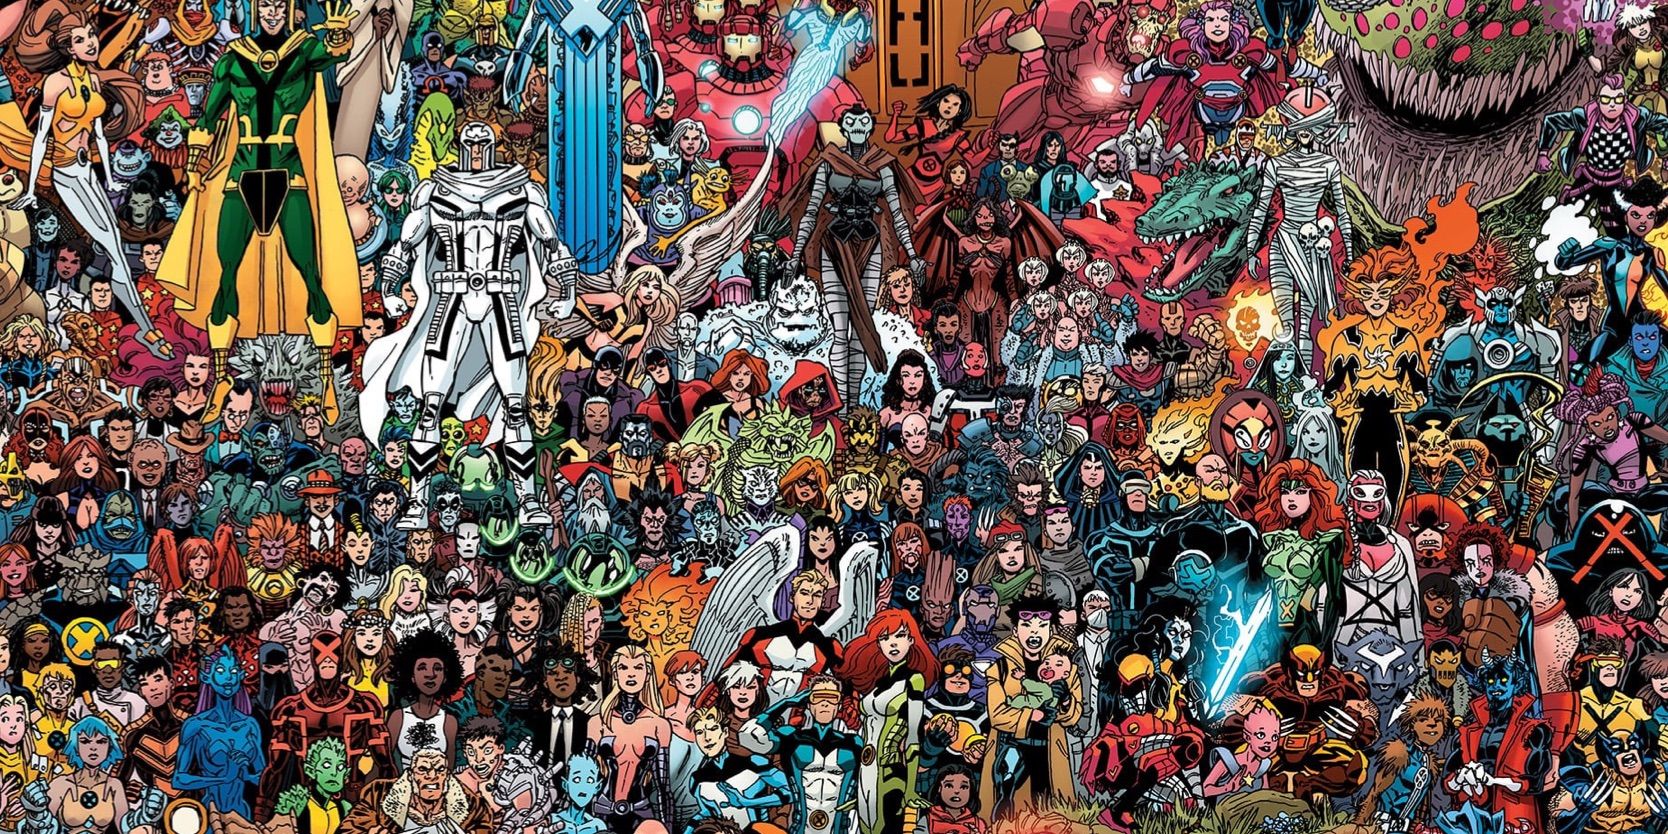 Foto do grupo de mutantes dos X-Men por Scott Koblish, capa excepcional da variante envolvente dos X-Men #1.